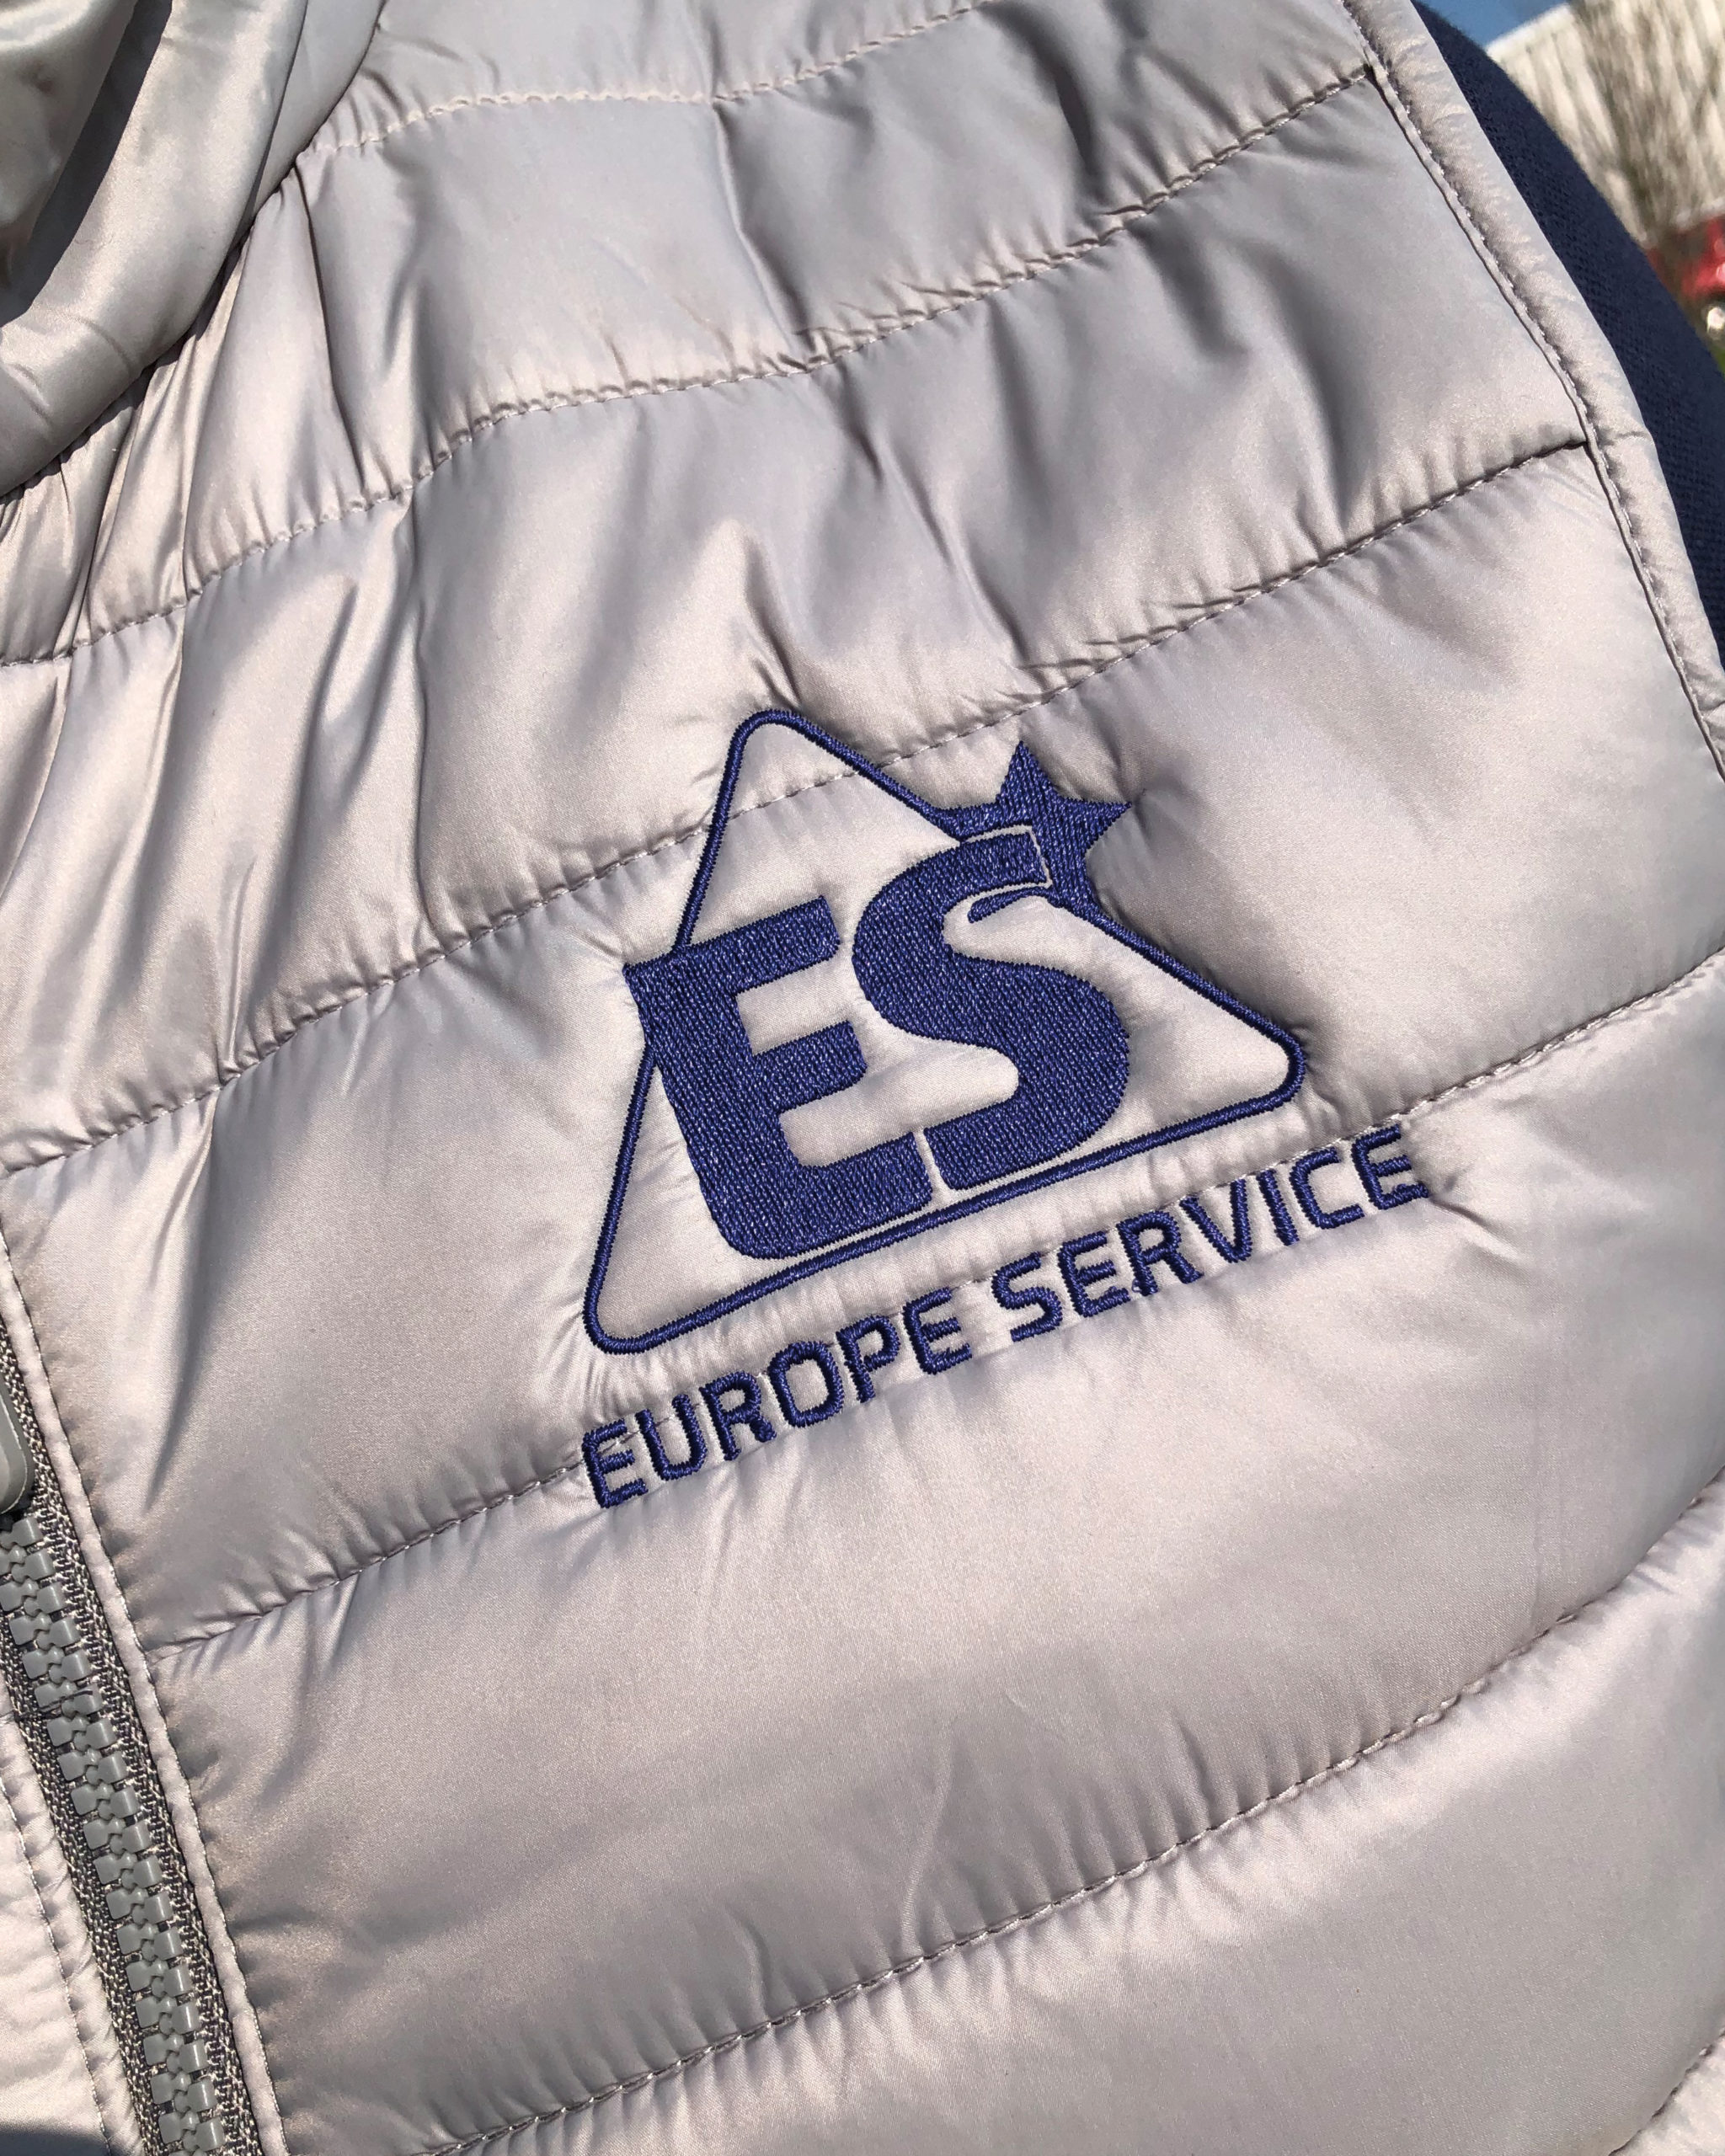 Vêtements Europe Service Auvergne